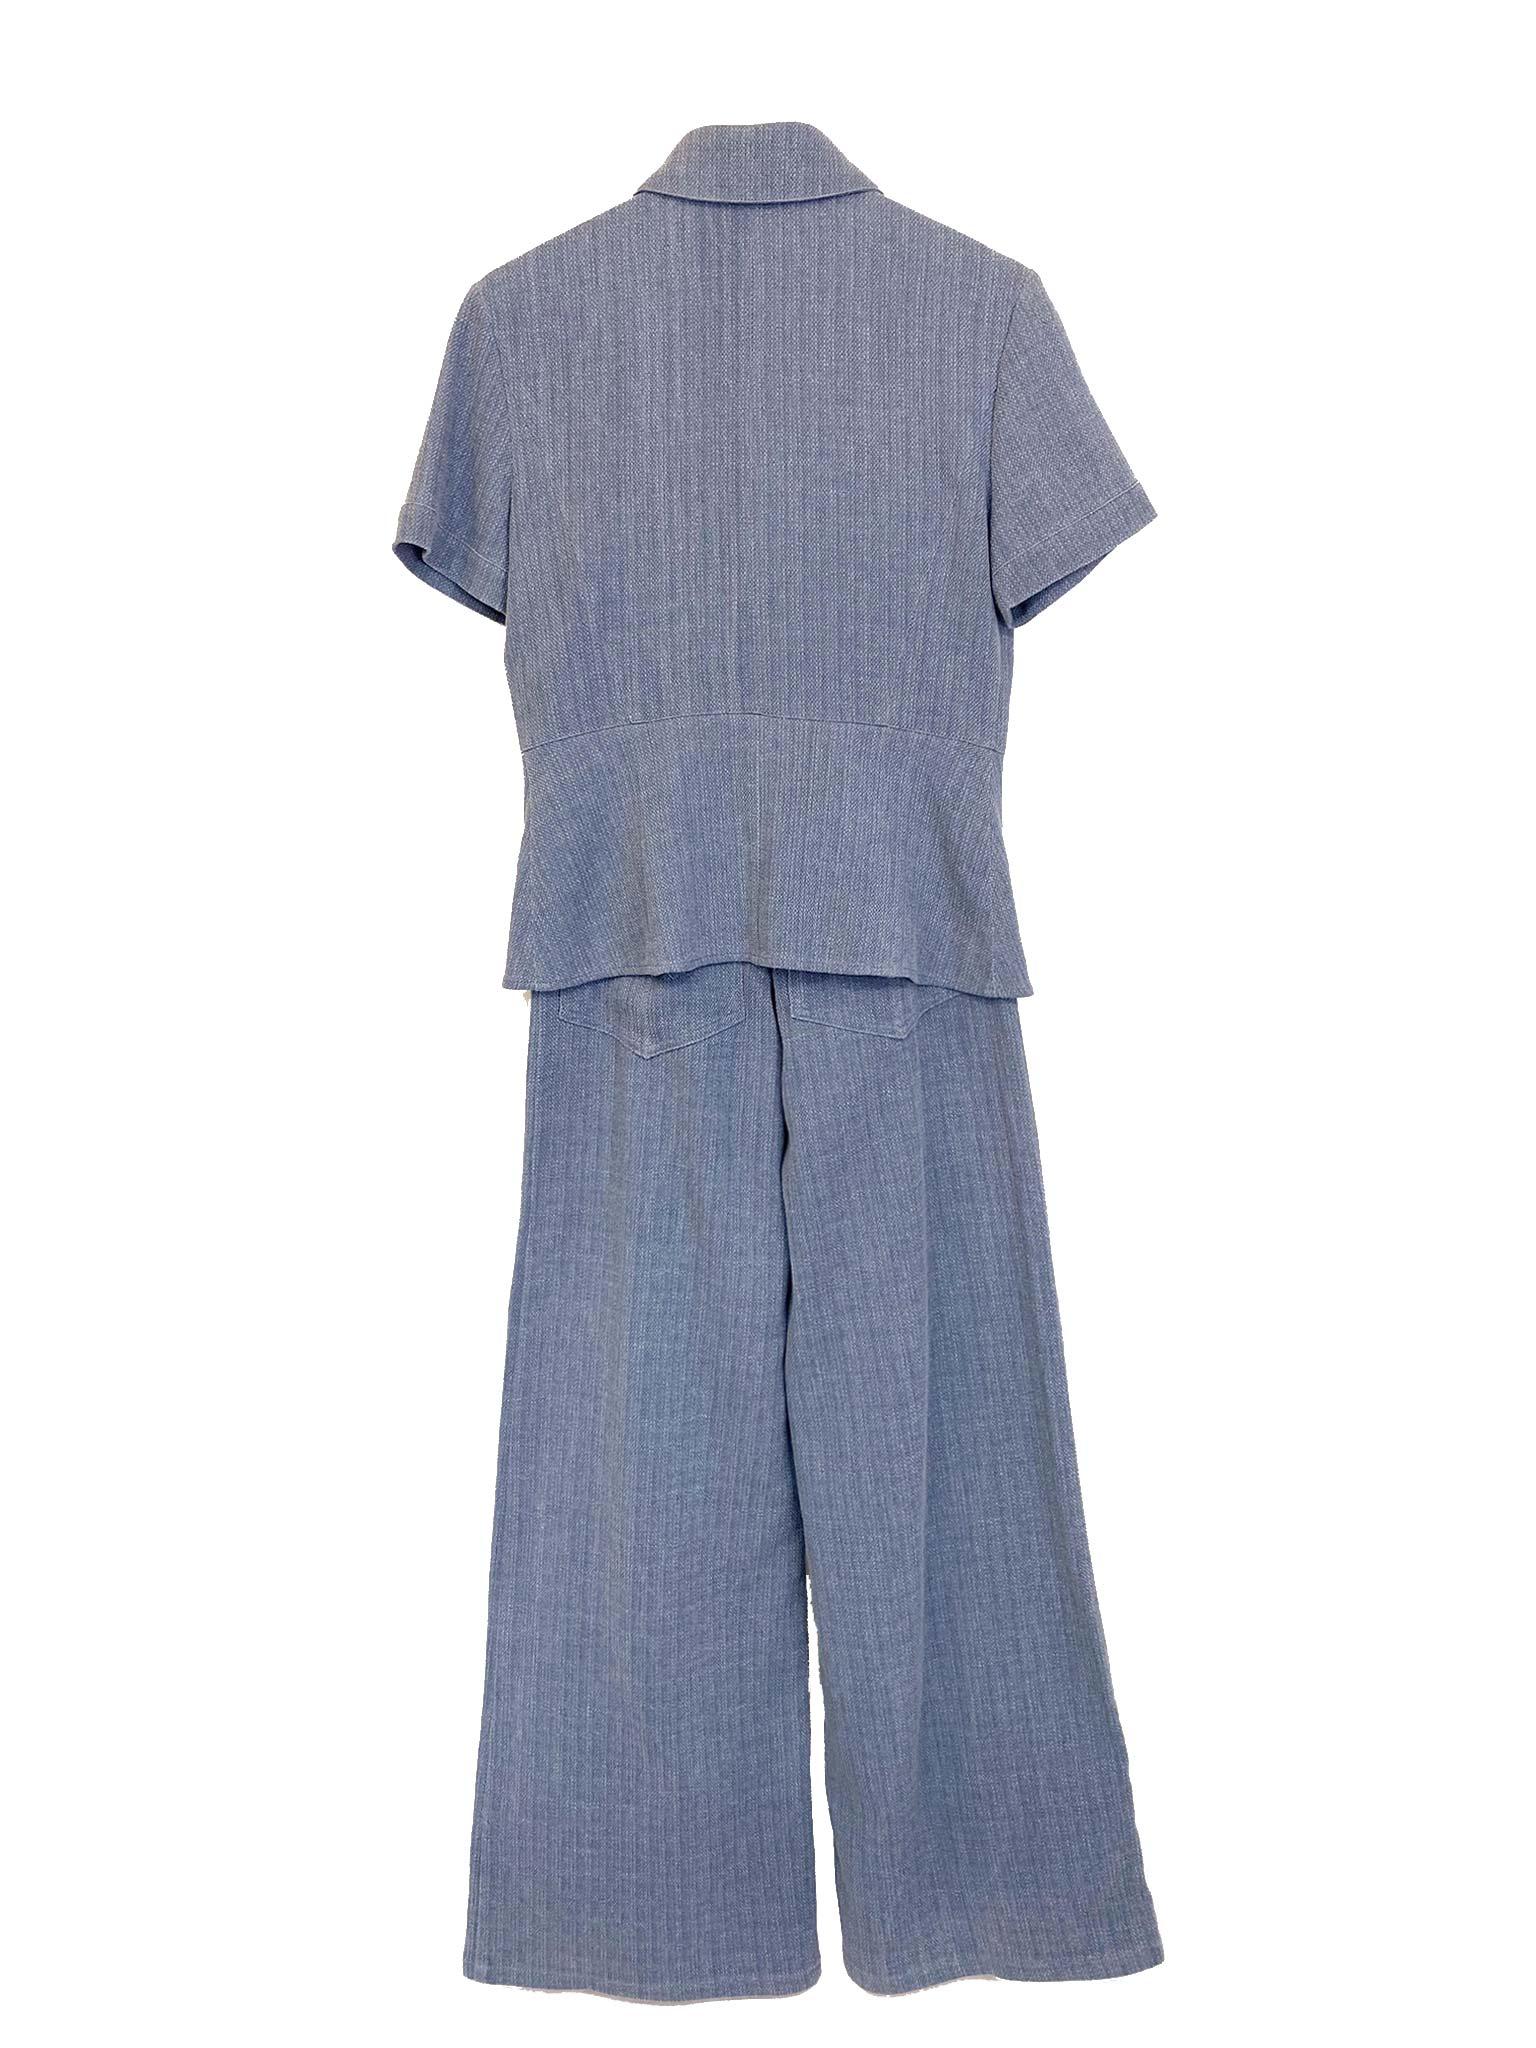 CHANEL Baumwollhemd und -hose im Set

Dieses CHANEL Hemd- und Hosenset aus Baumwolle ist ein klassisches und vielseitiges Kleidungsstück, das sich für jeden Anlass eignet. Das Hemd ist aus hochwertiger Baumwolle gefertigt und hat ein klassisches